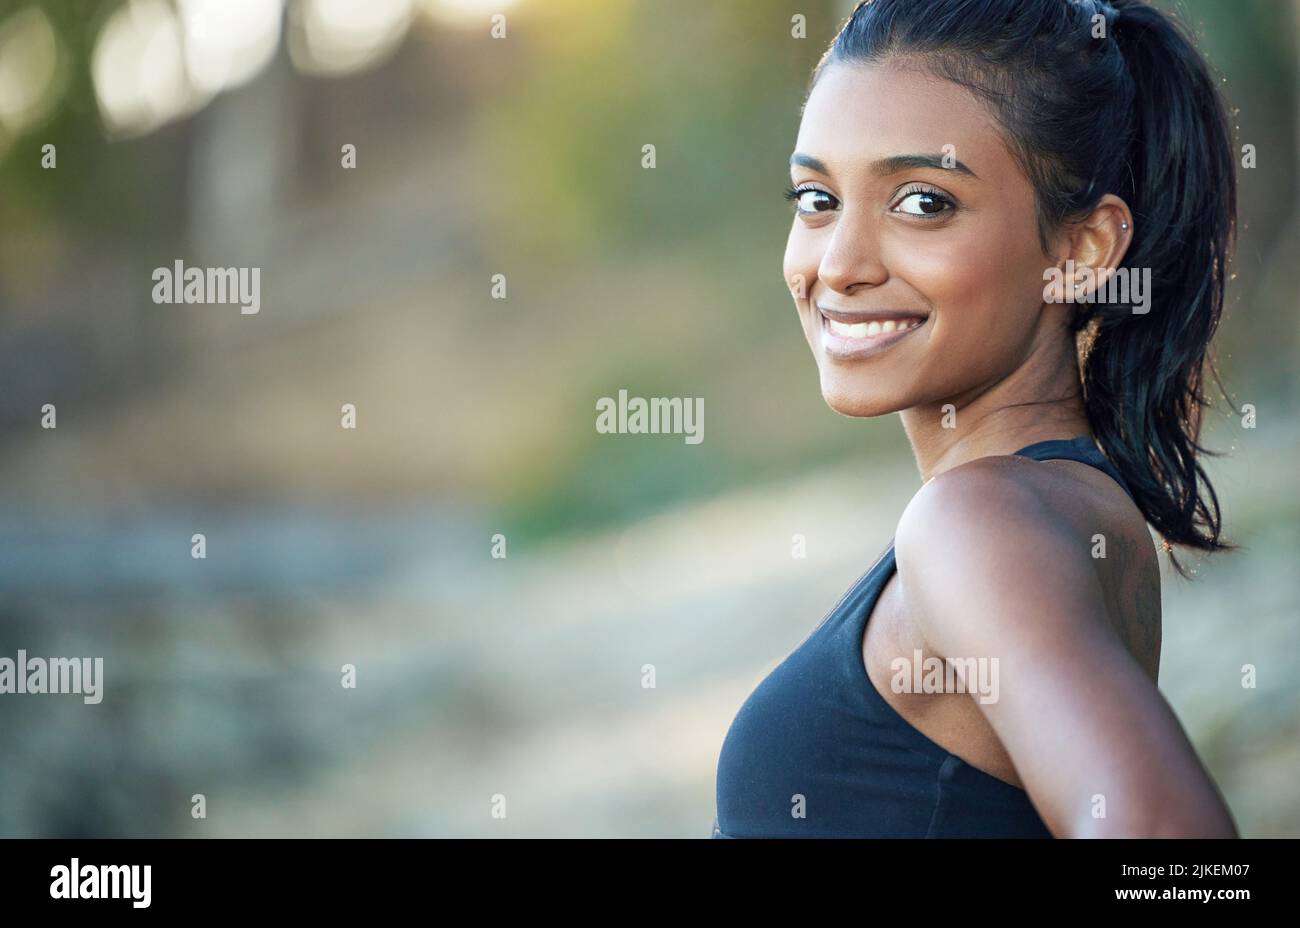 Ich Laufe aus Spaß und besserer Gesundheit. Porträt einer sportlichen jungen Frau, die im Freien trainiert. Stockfoto